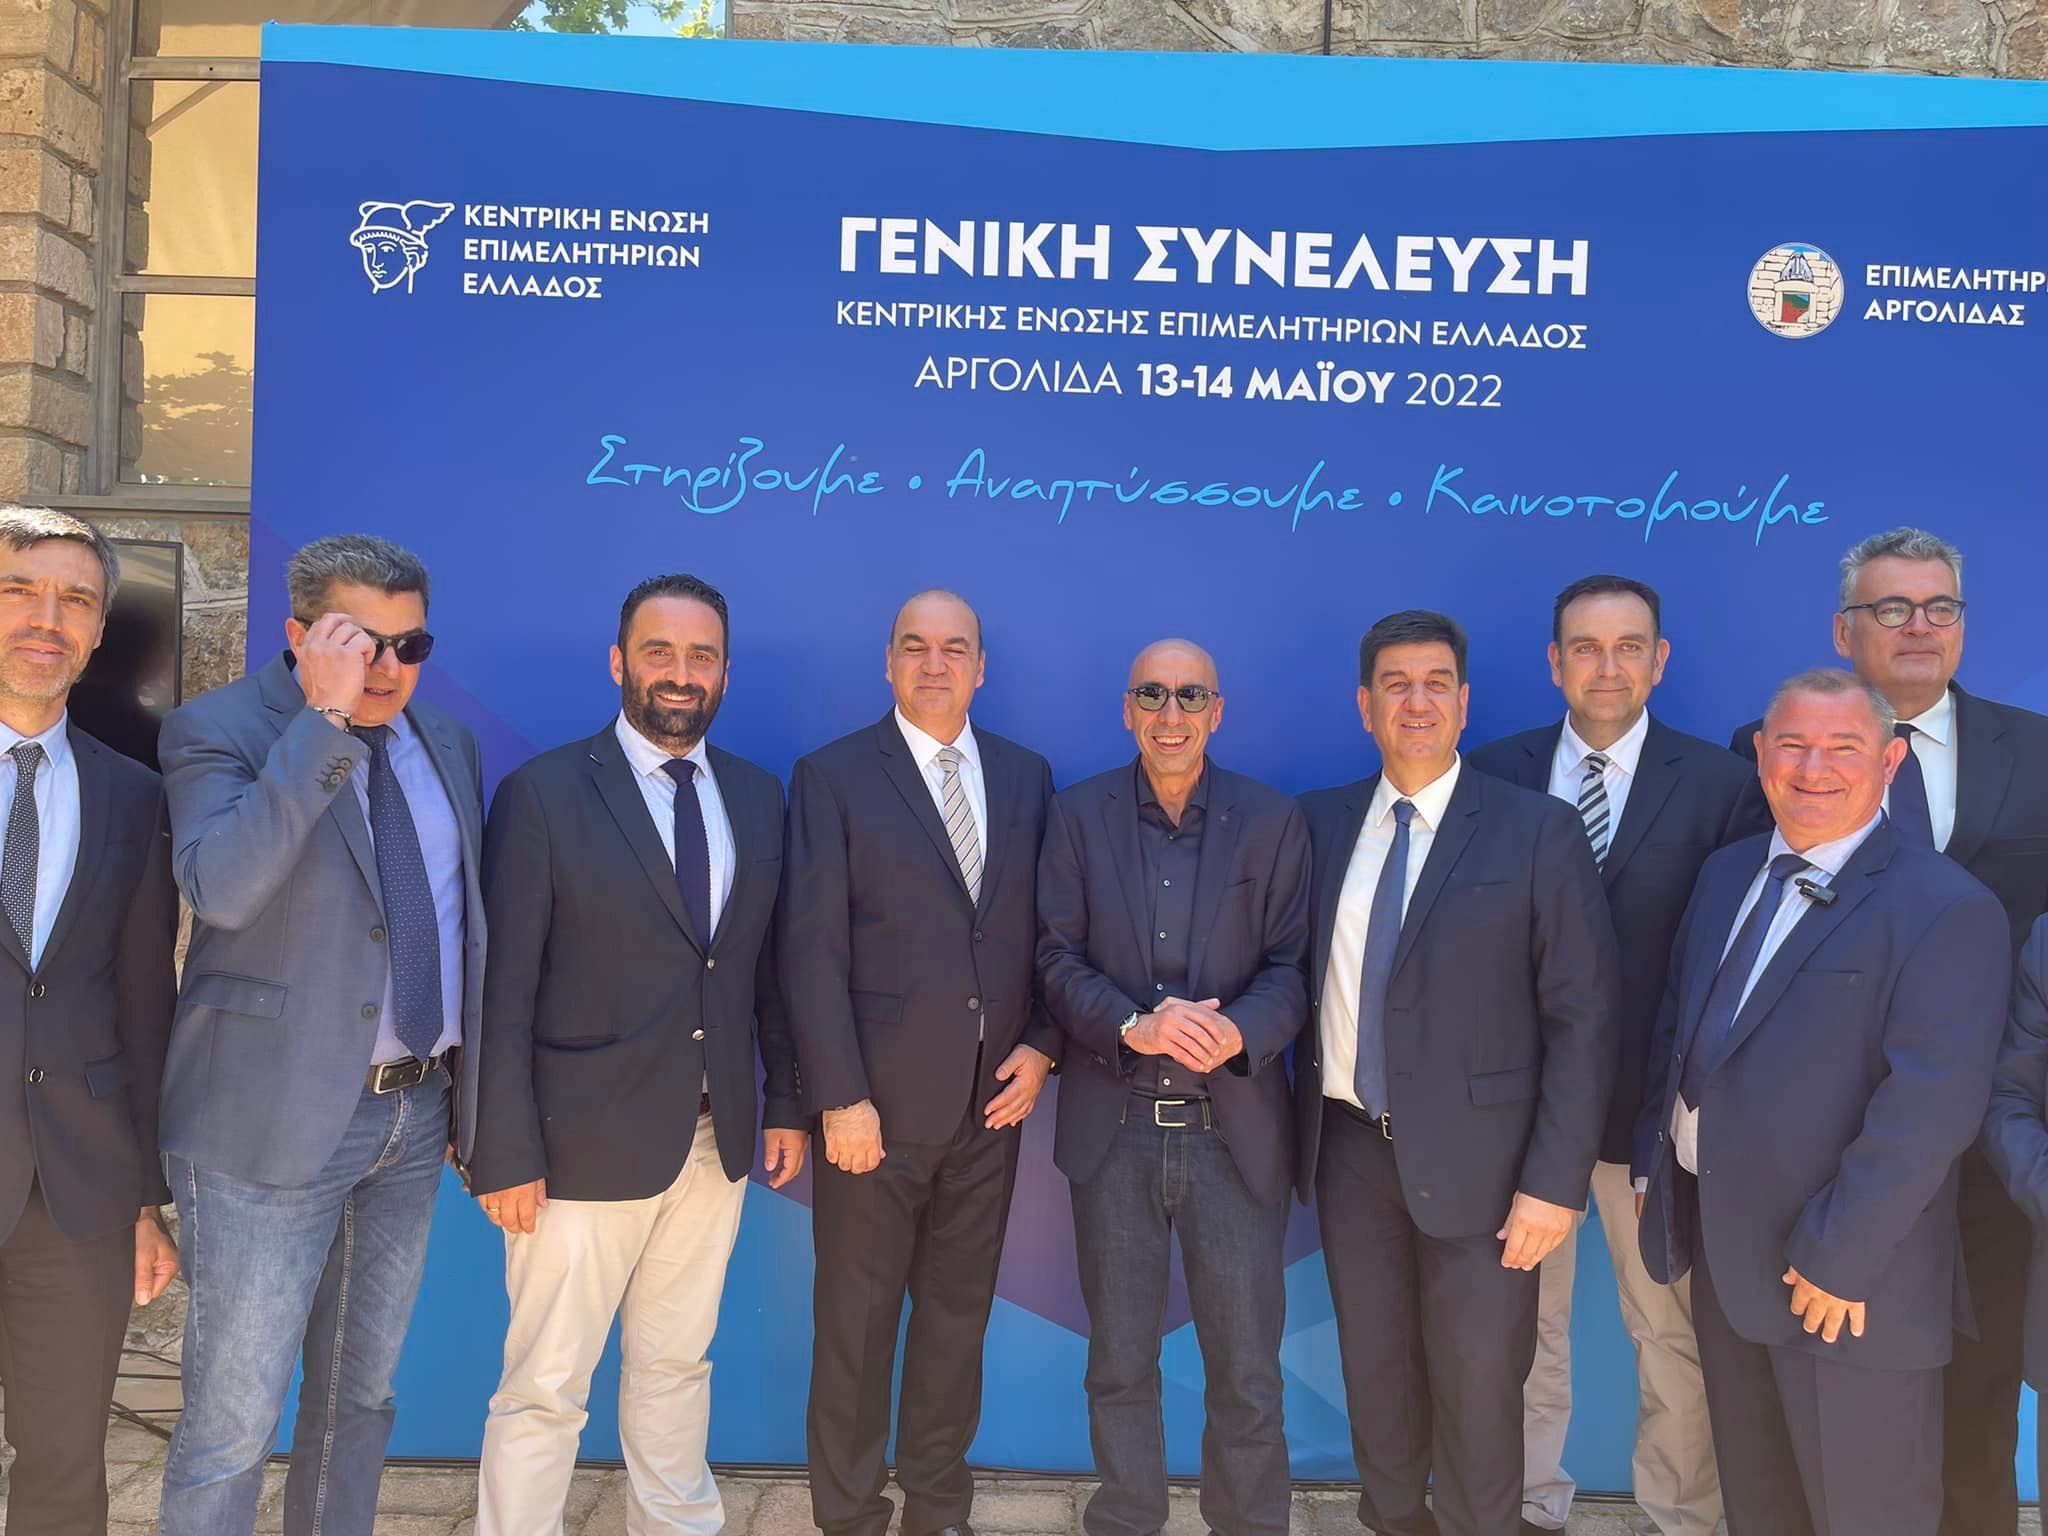 «Σημαντικές παρεμβάσεις του Προέδρου του ΕΒΕΡ κ. Αντώνη Γραβάνη στη Γενική Συνέλευση της Κεντρικής Ένωσης Επιμελητηρίων Ελλάδας»